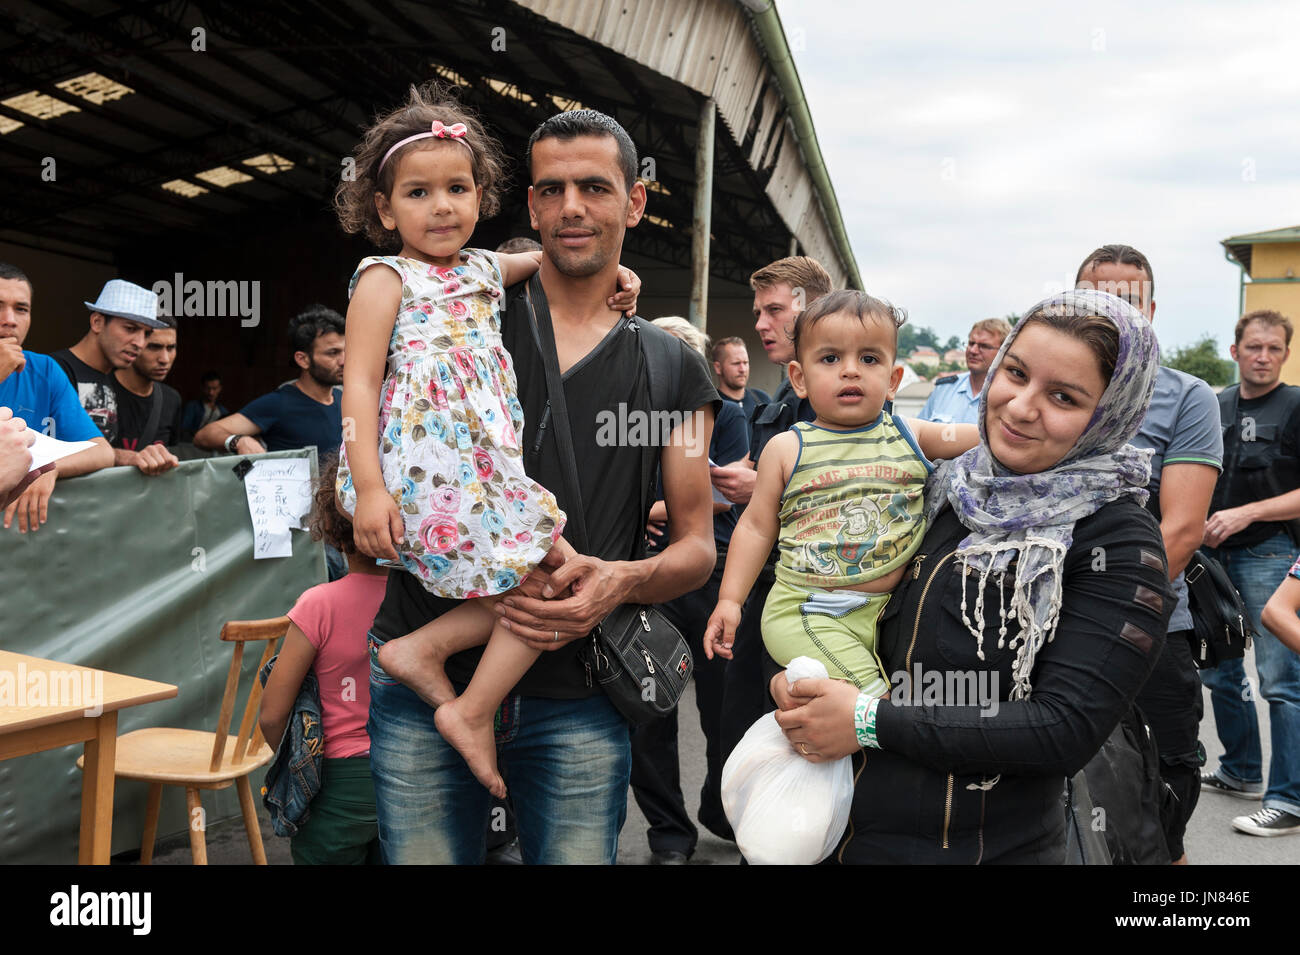 Passau, Deutschland - August 1st, 2015: syrische Flüchtlinge Familie bei einer Registrierung camp in Passau, Deutschland. Sie sind auf der Suche nach Asyl in Europa. Stockfoto